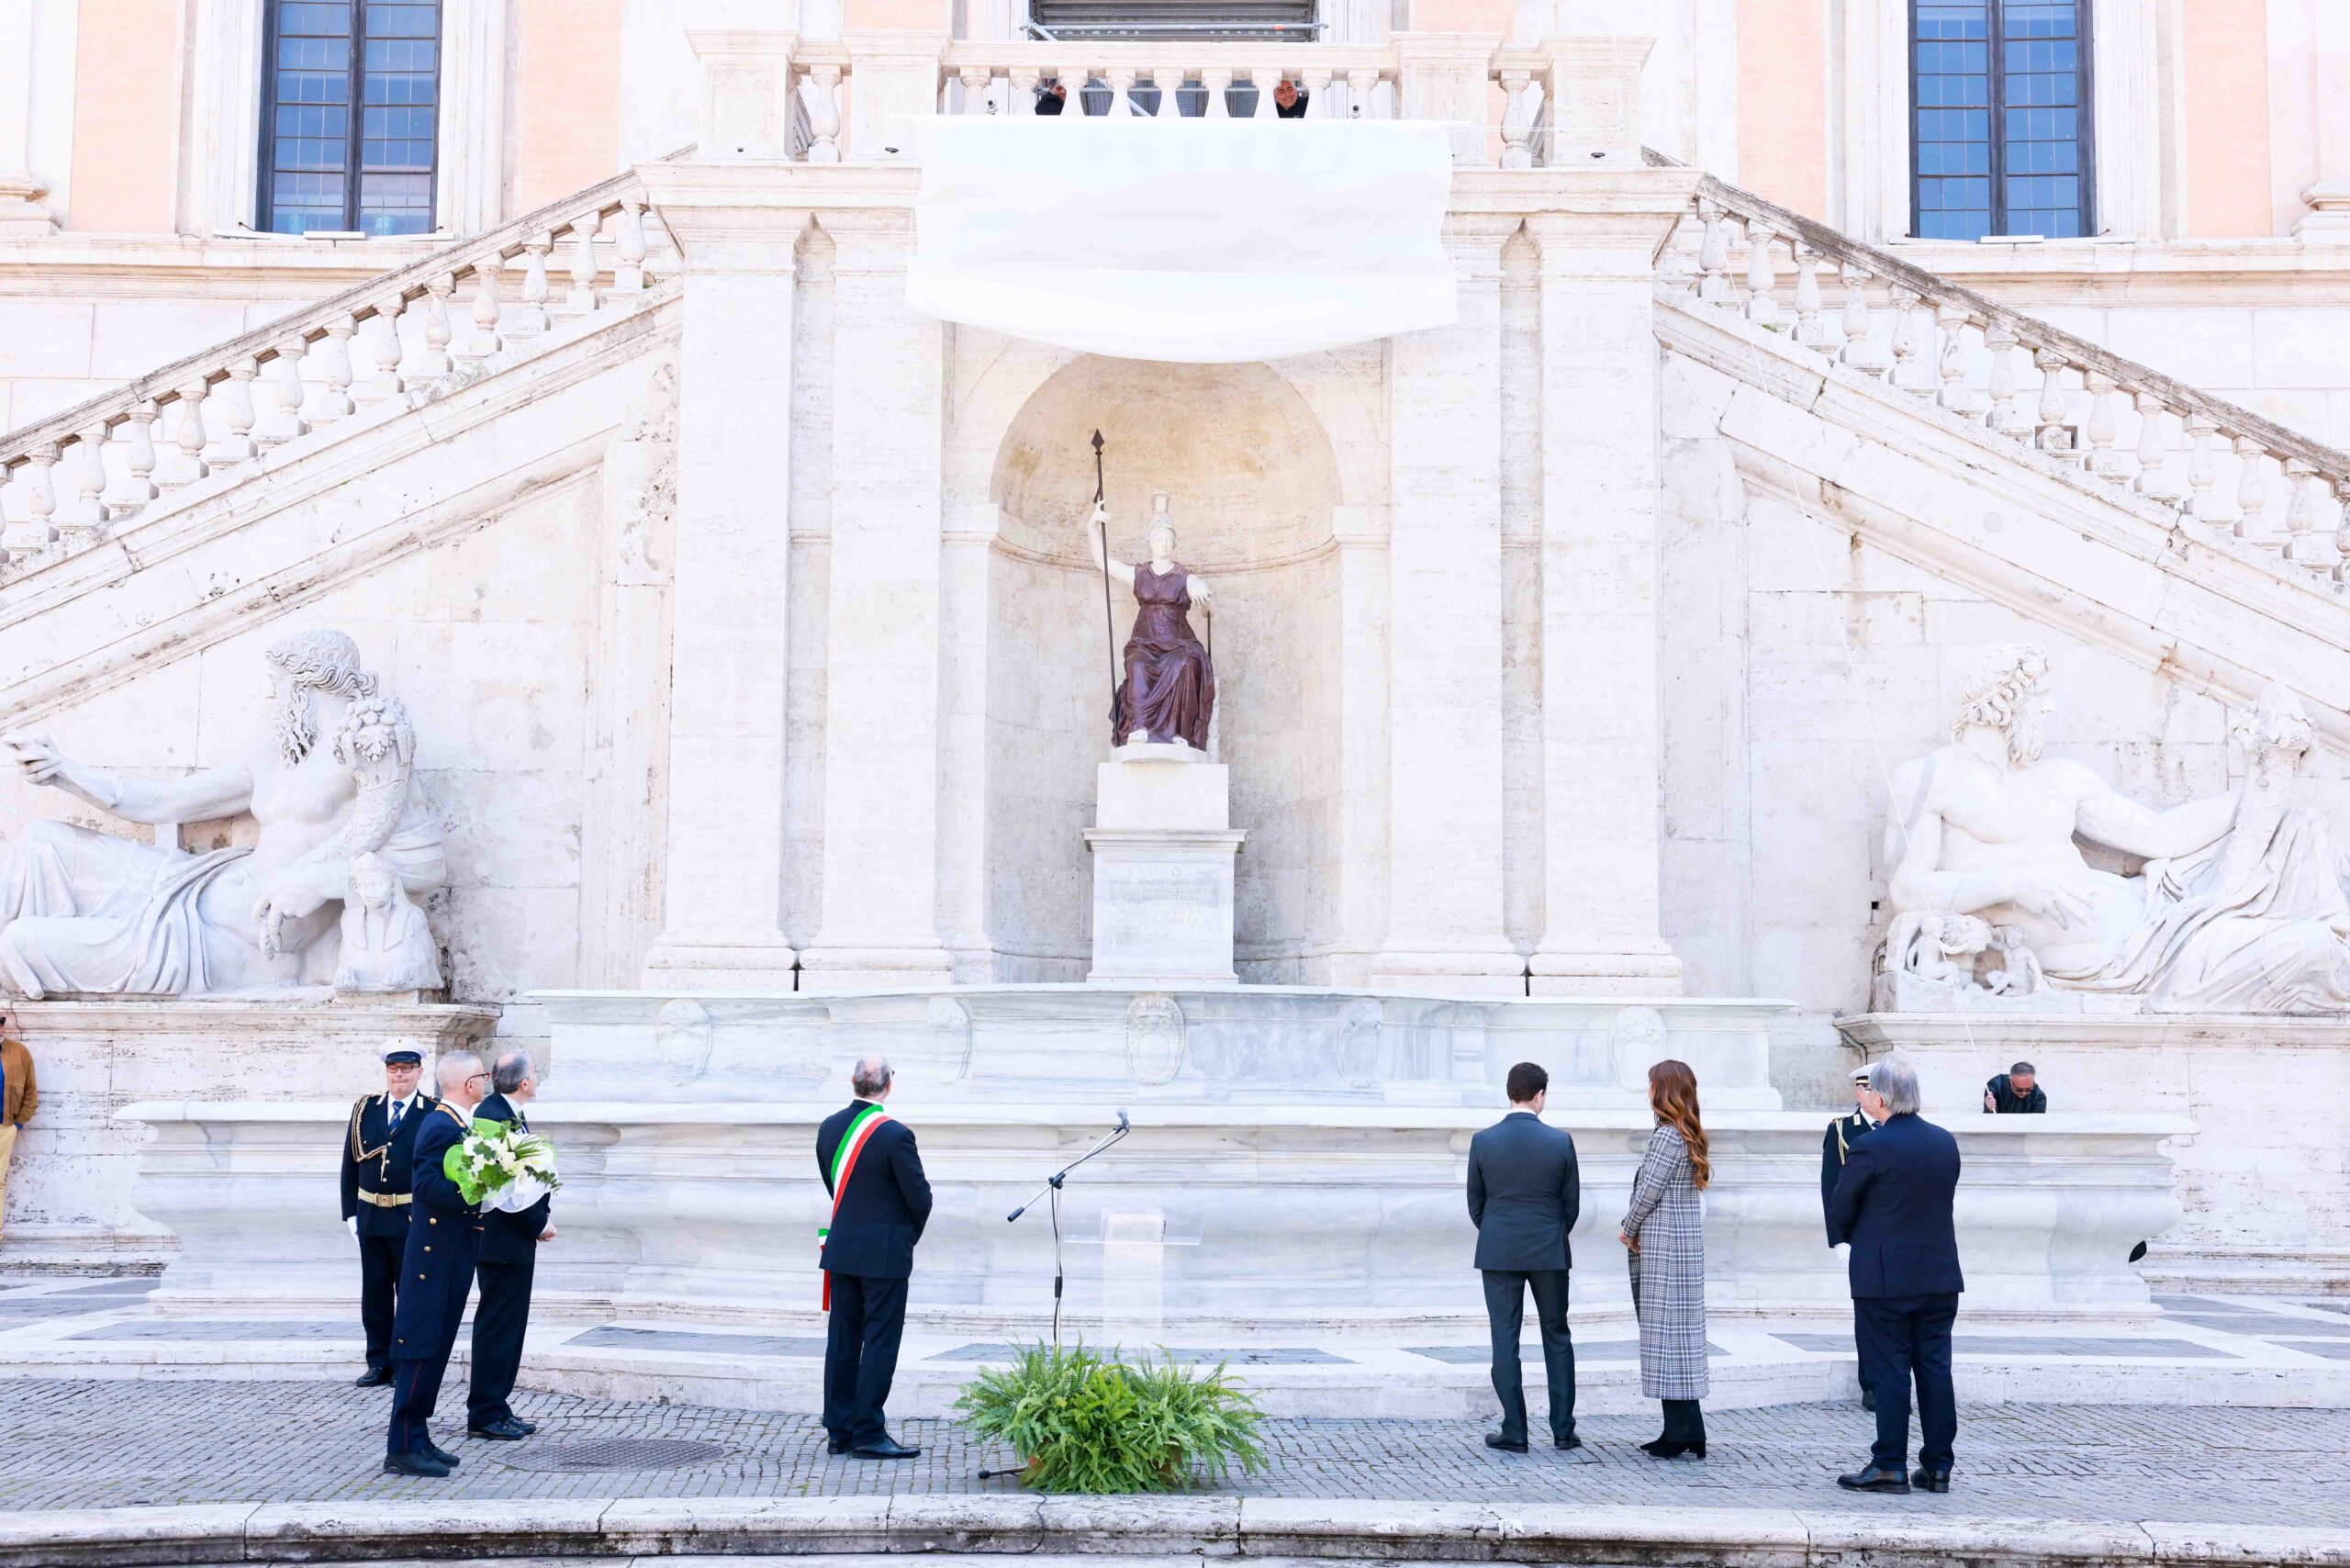 L’intervento alla fontanta della Dea Roma è stato realizzato grazie all’atto di mecenatismo di Biagiotti Group e Intesa Sanpaolo